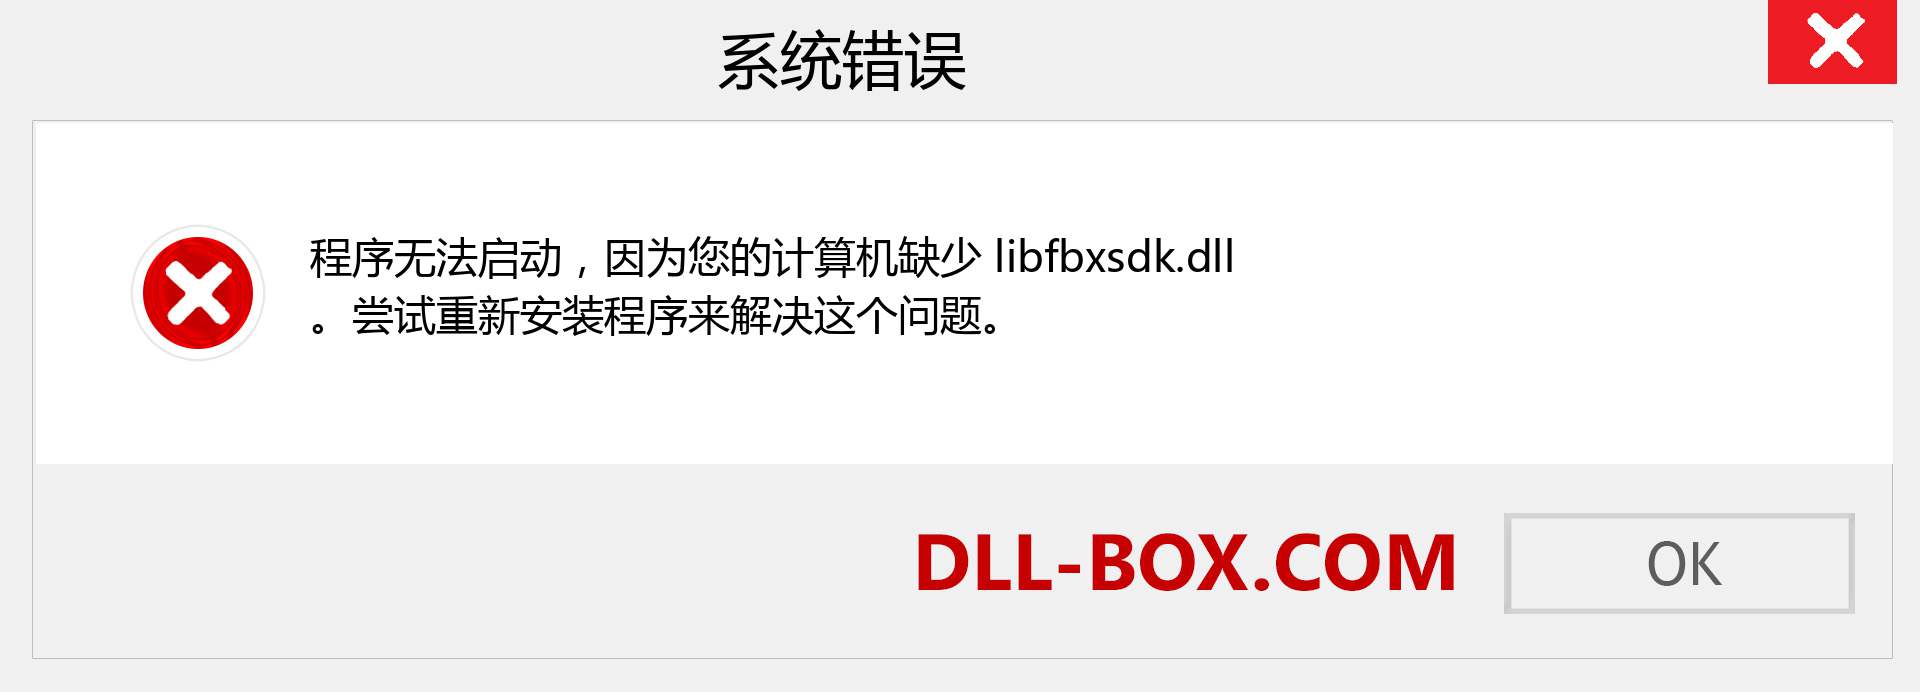 libfbxsdk.dll 文件丢失？。 适用于 Windows 7、8、10 的下载 - 修复 Windows、照片、图像上的 libfbxsdk dll 丢失错误